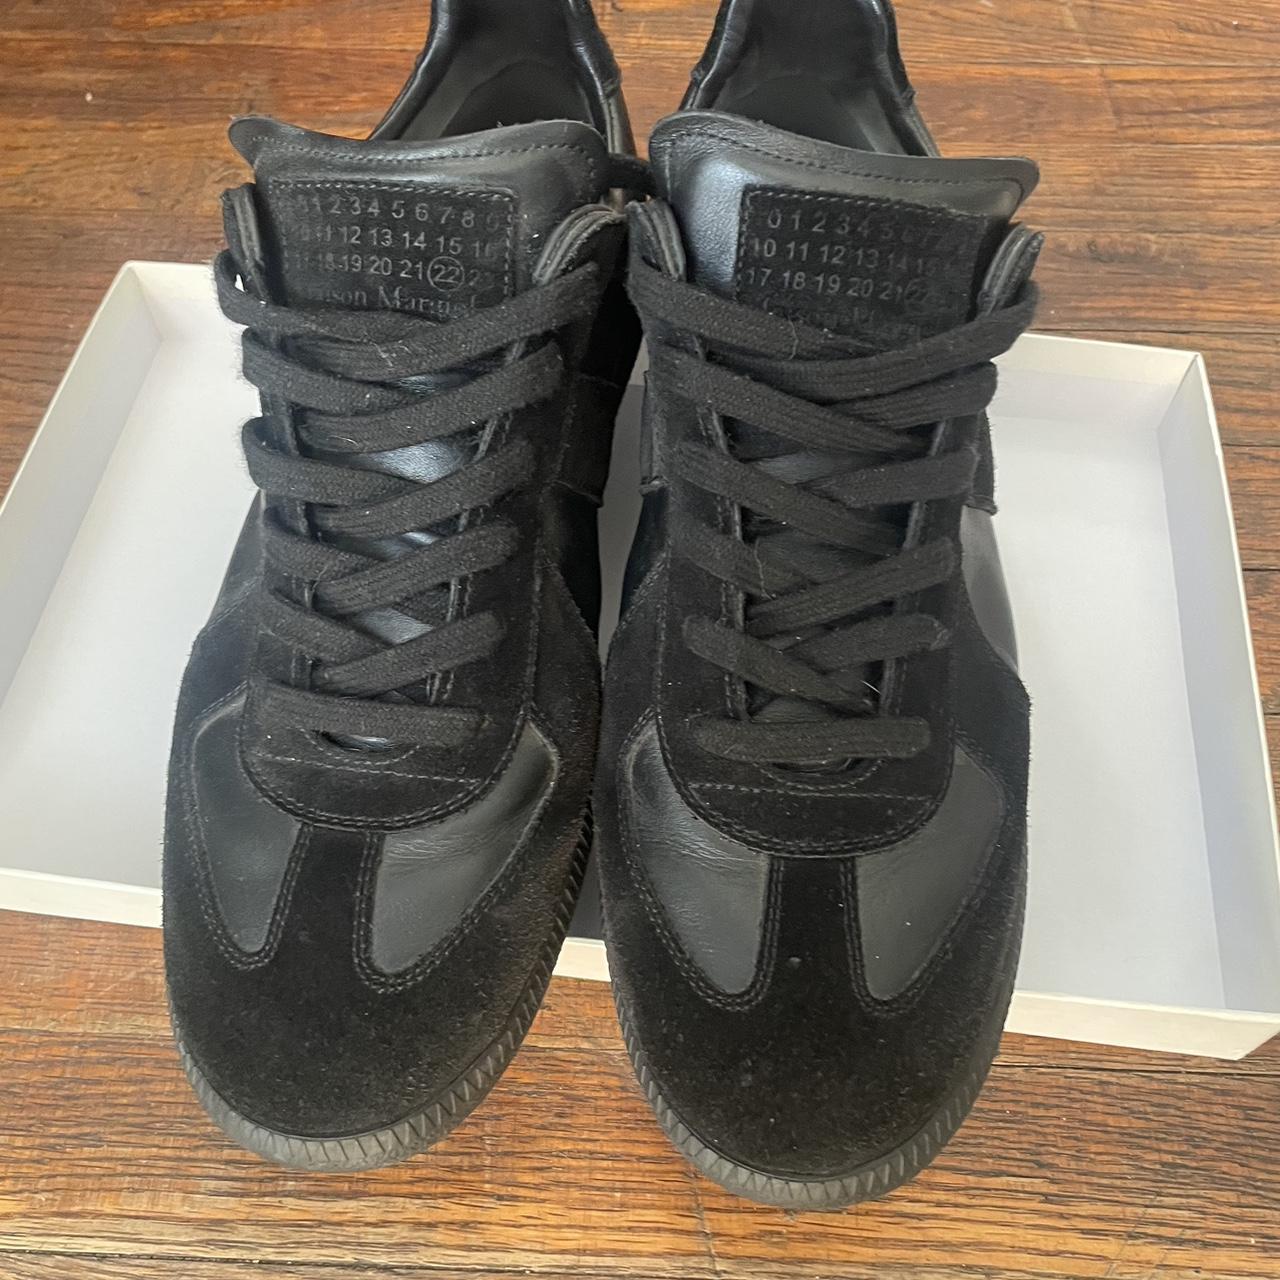 Maison Margiela black sneakers 100% authentic ( if... - Depop